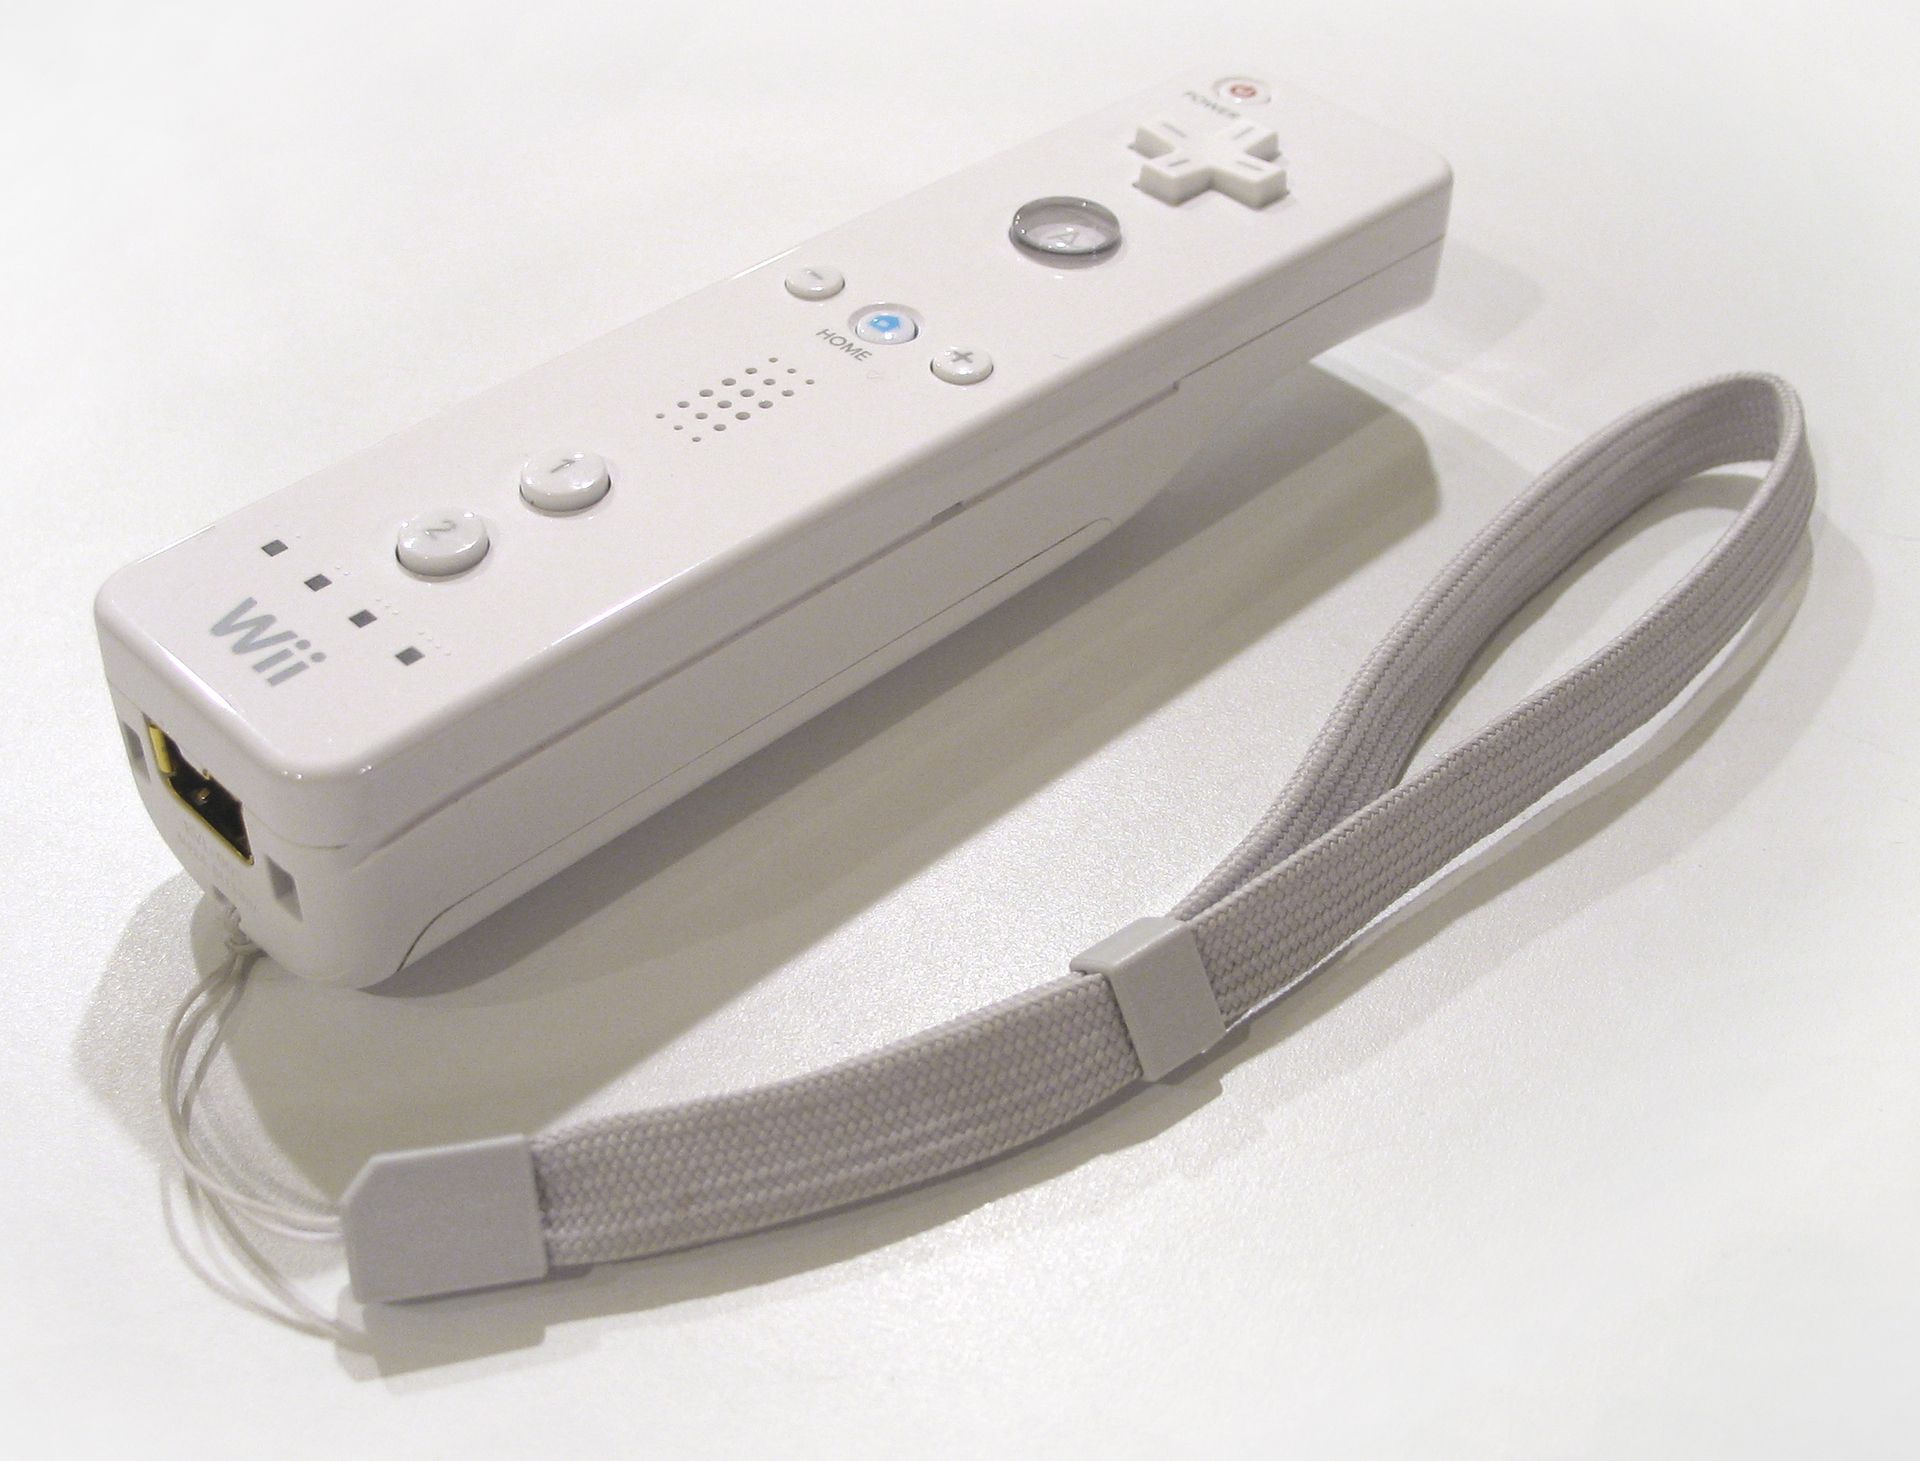 Wii Mote Wallpaper - Nintendo Wii Photo 295954 - Fanpop